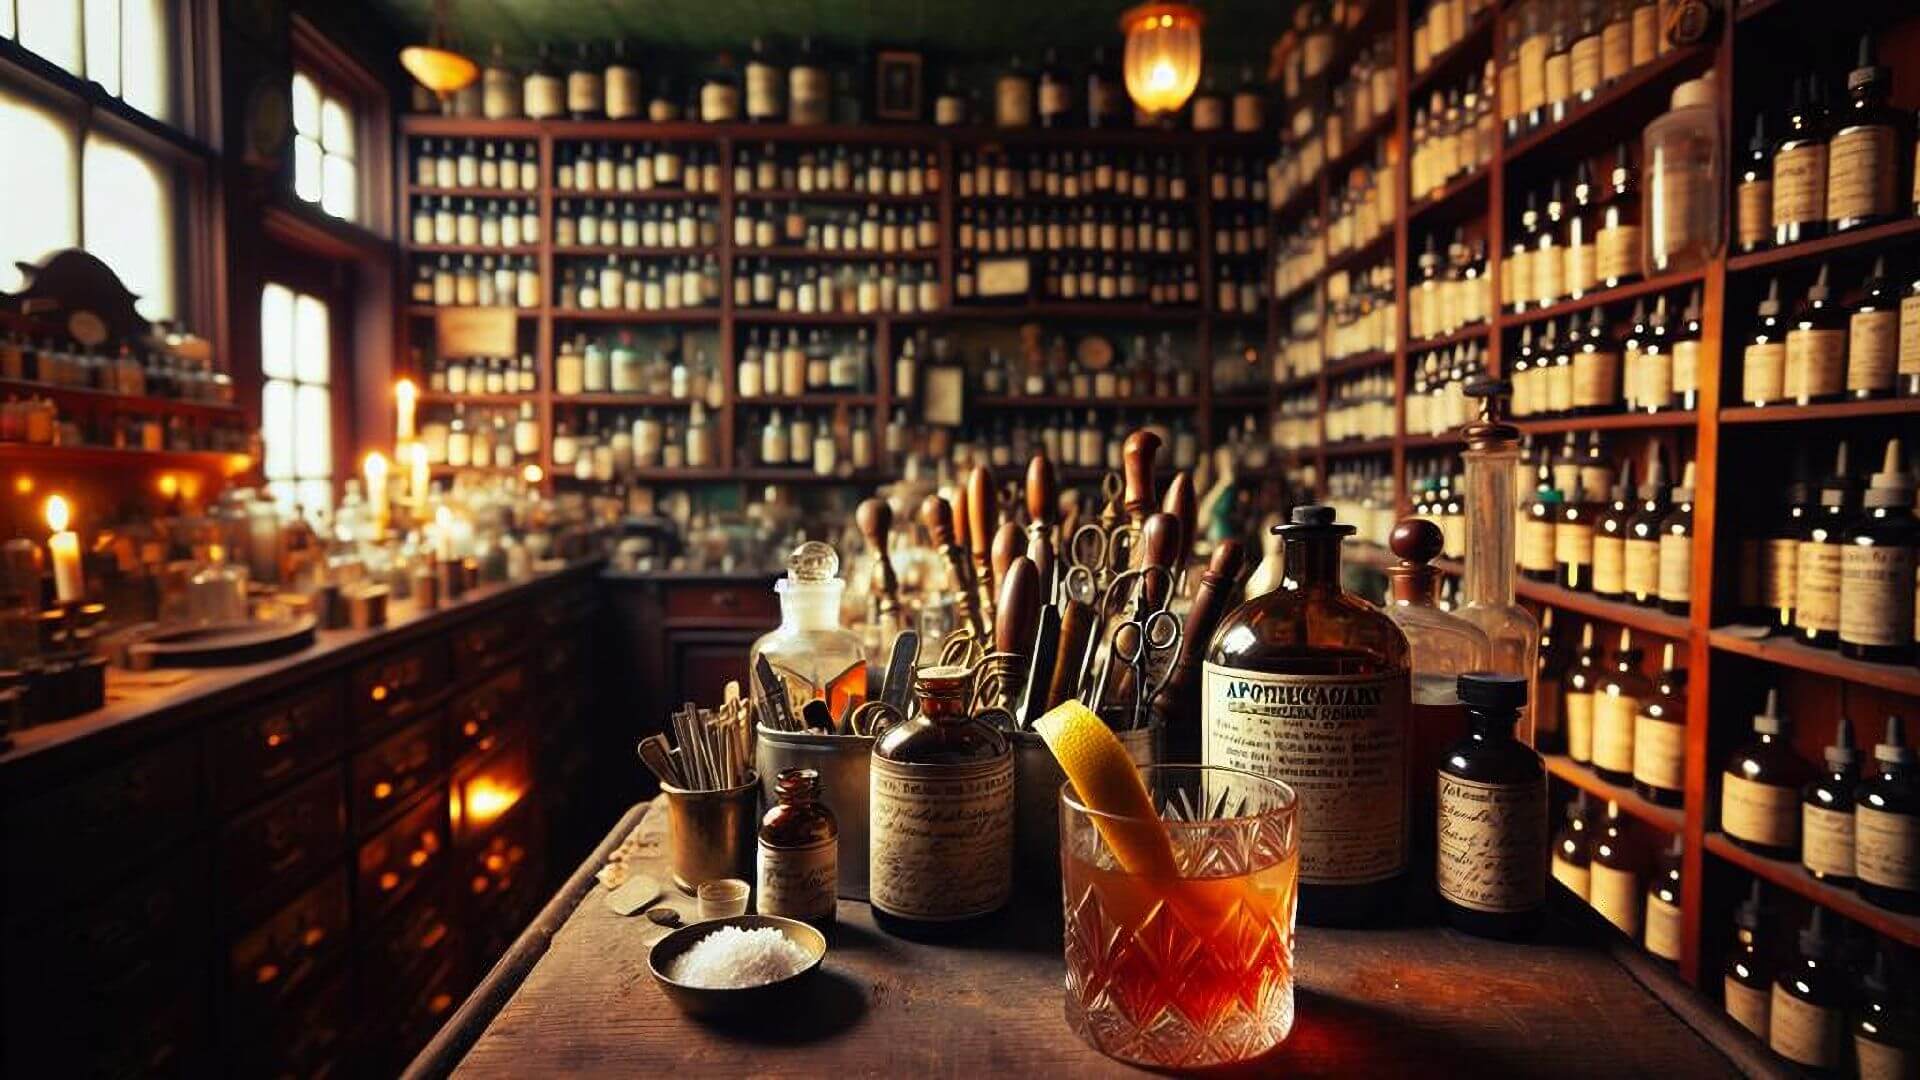 A Sazerac cocktail on a counter inside a rustic apothecary shop